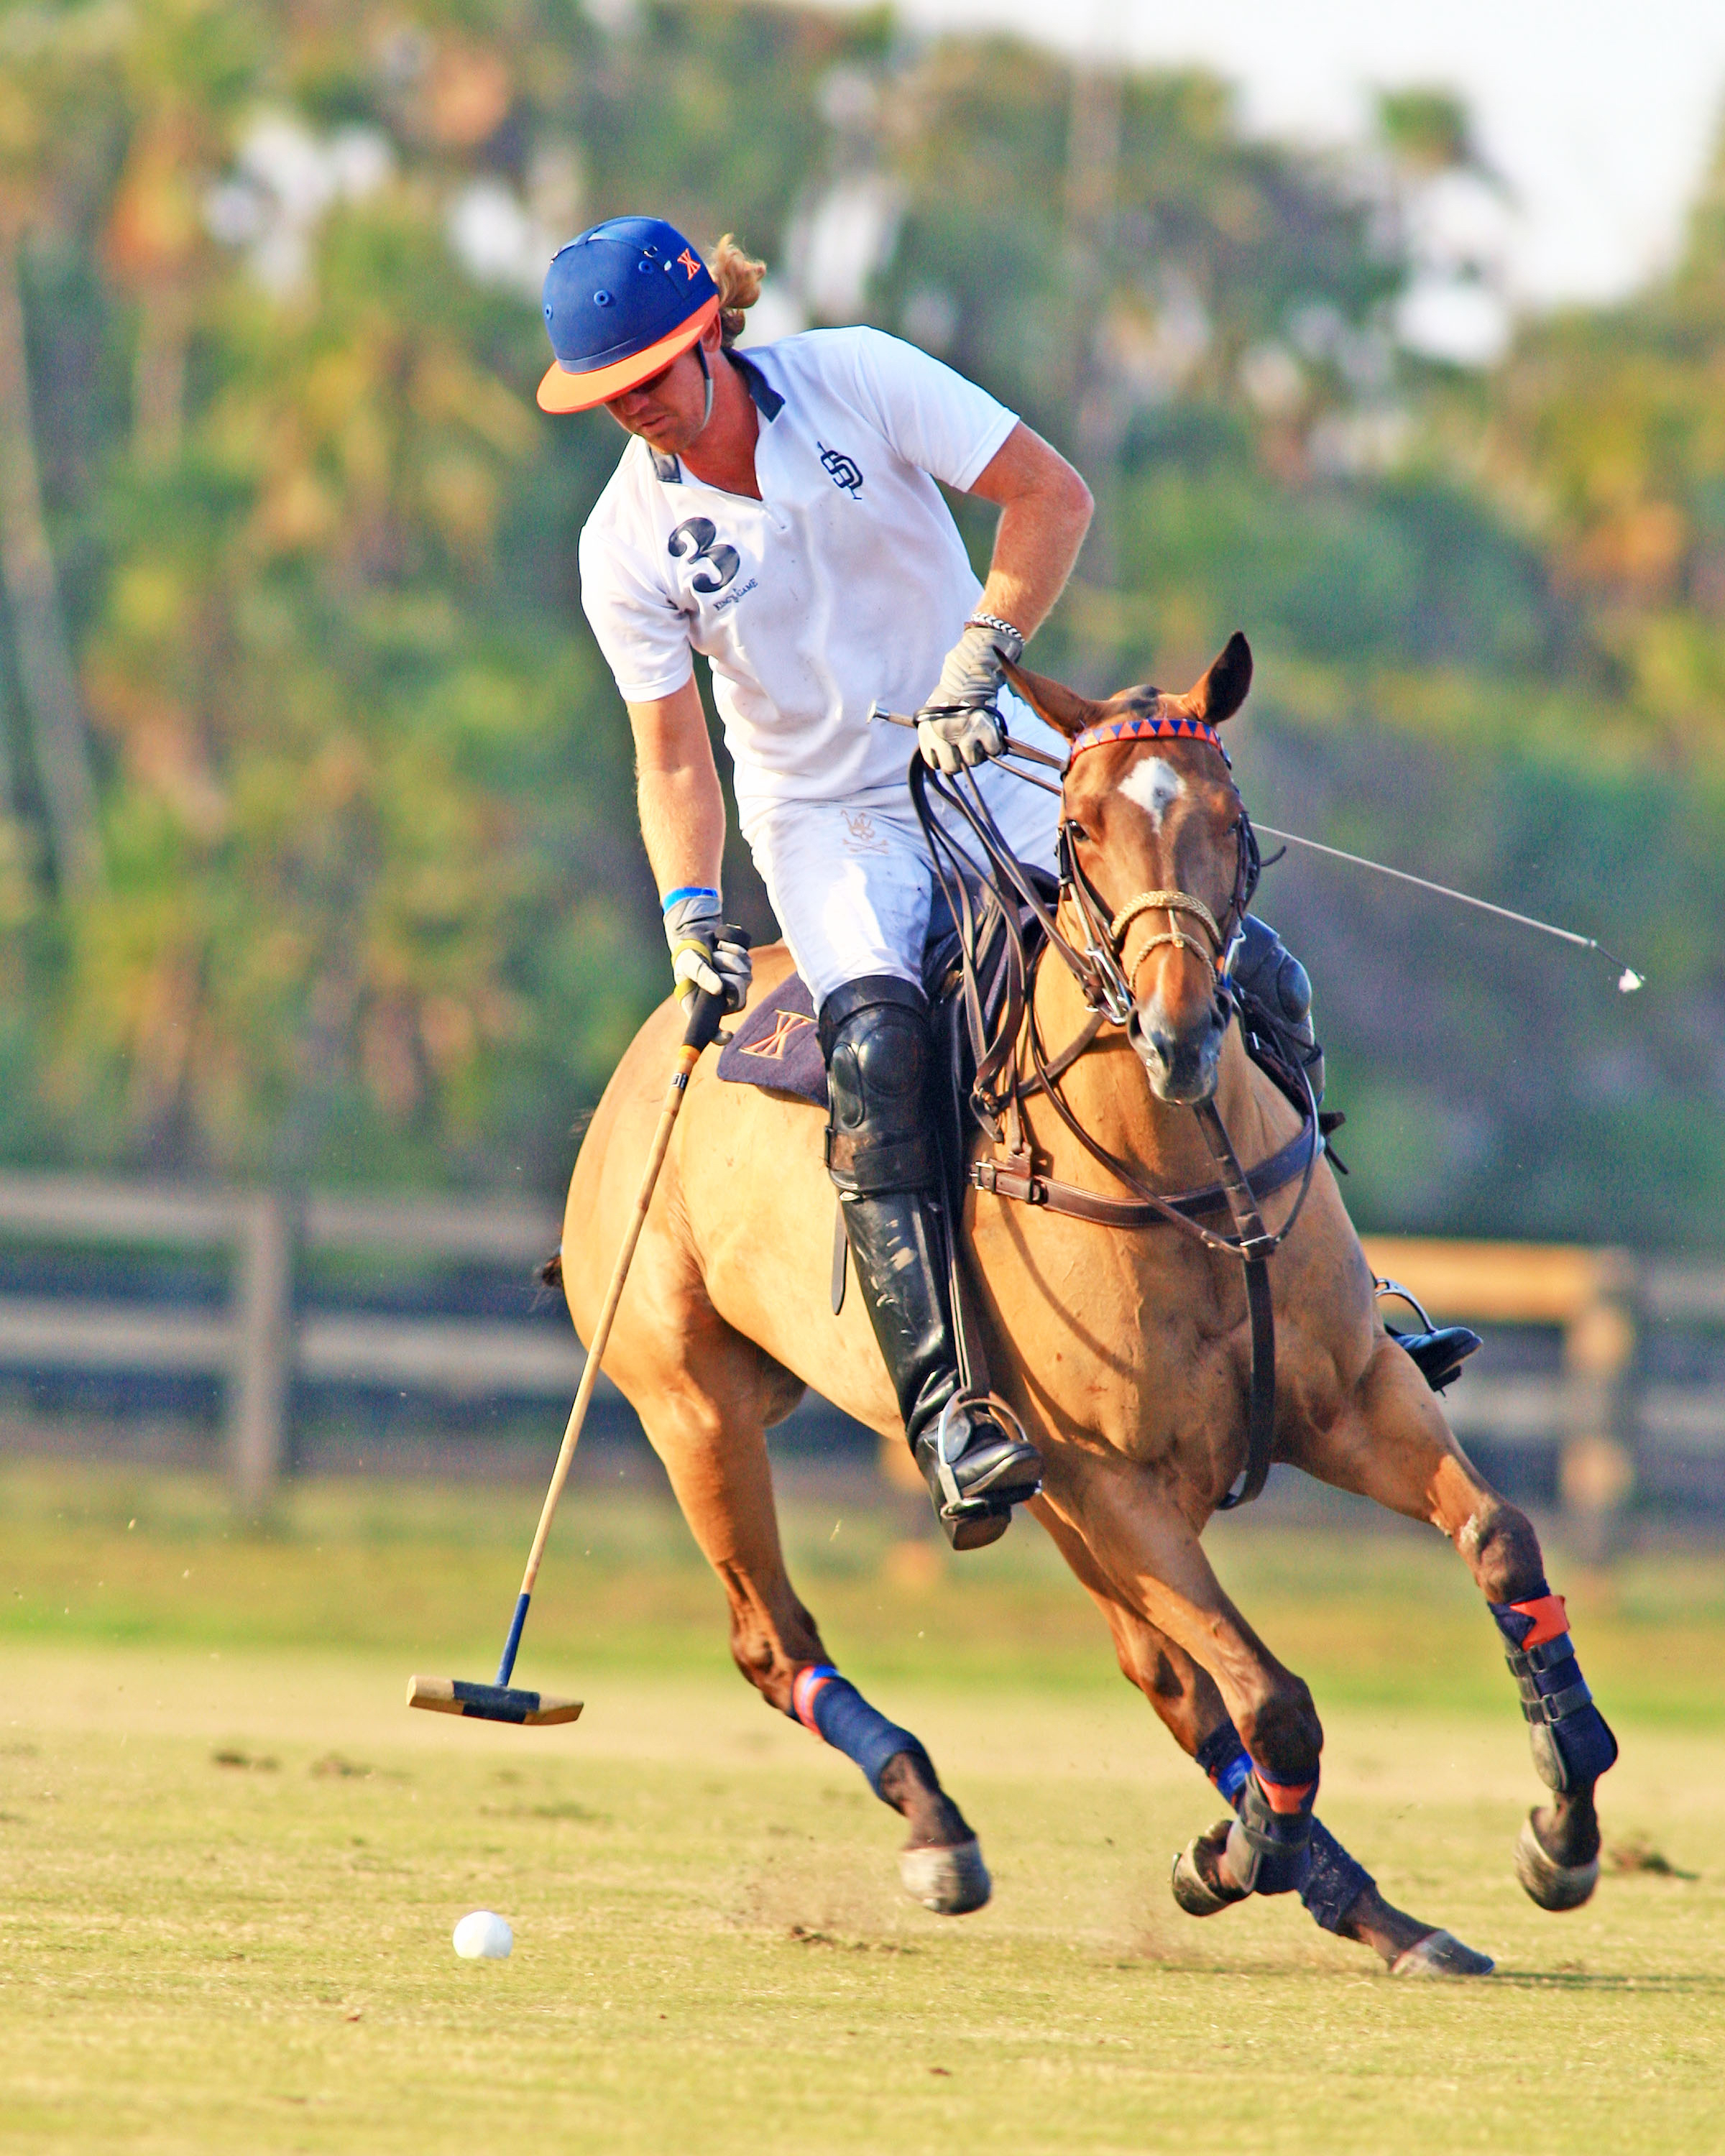 Kris Kampsen playing polo